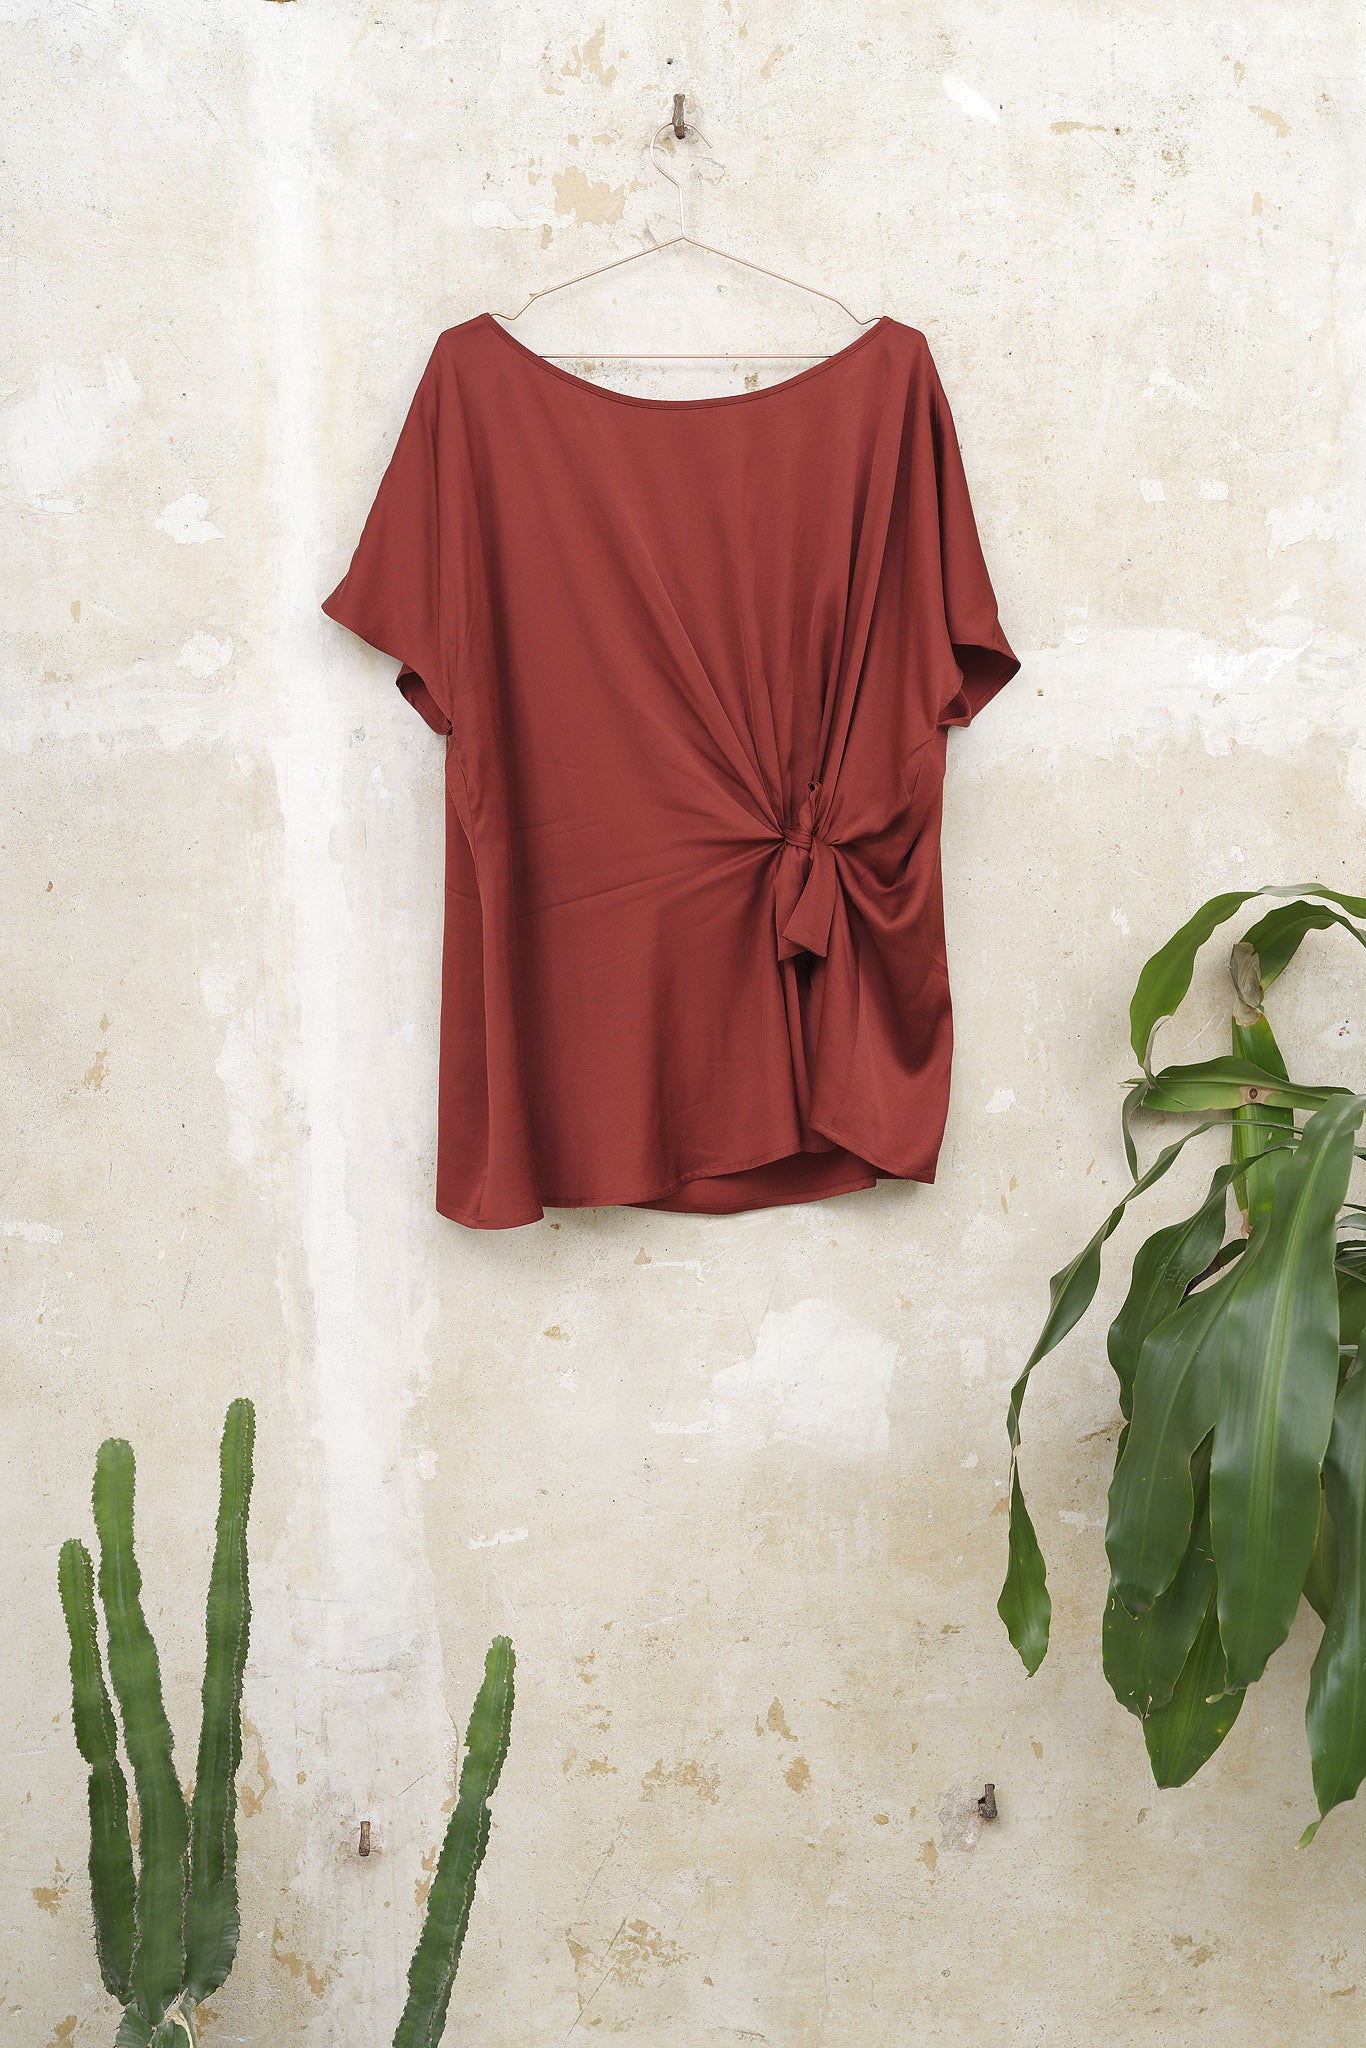 Shirt-Pauline-rot-Plus-Size-Große-Größe-Übergröße-Knoten